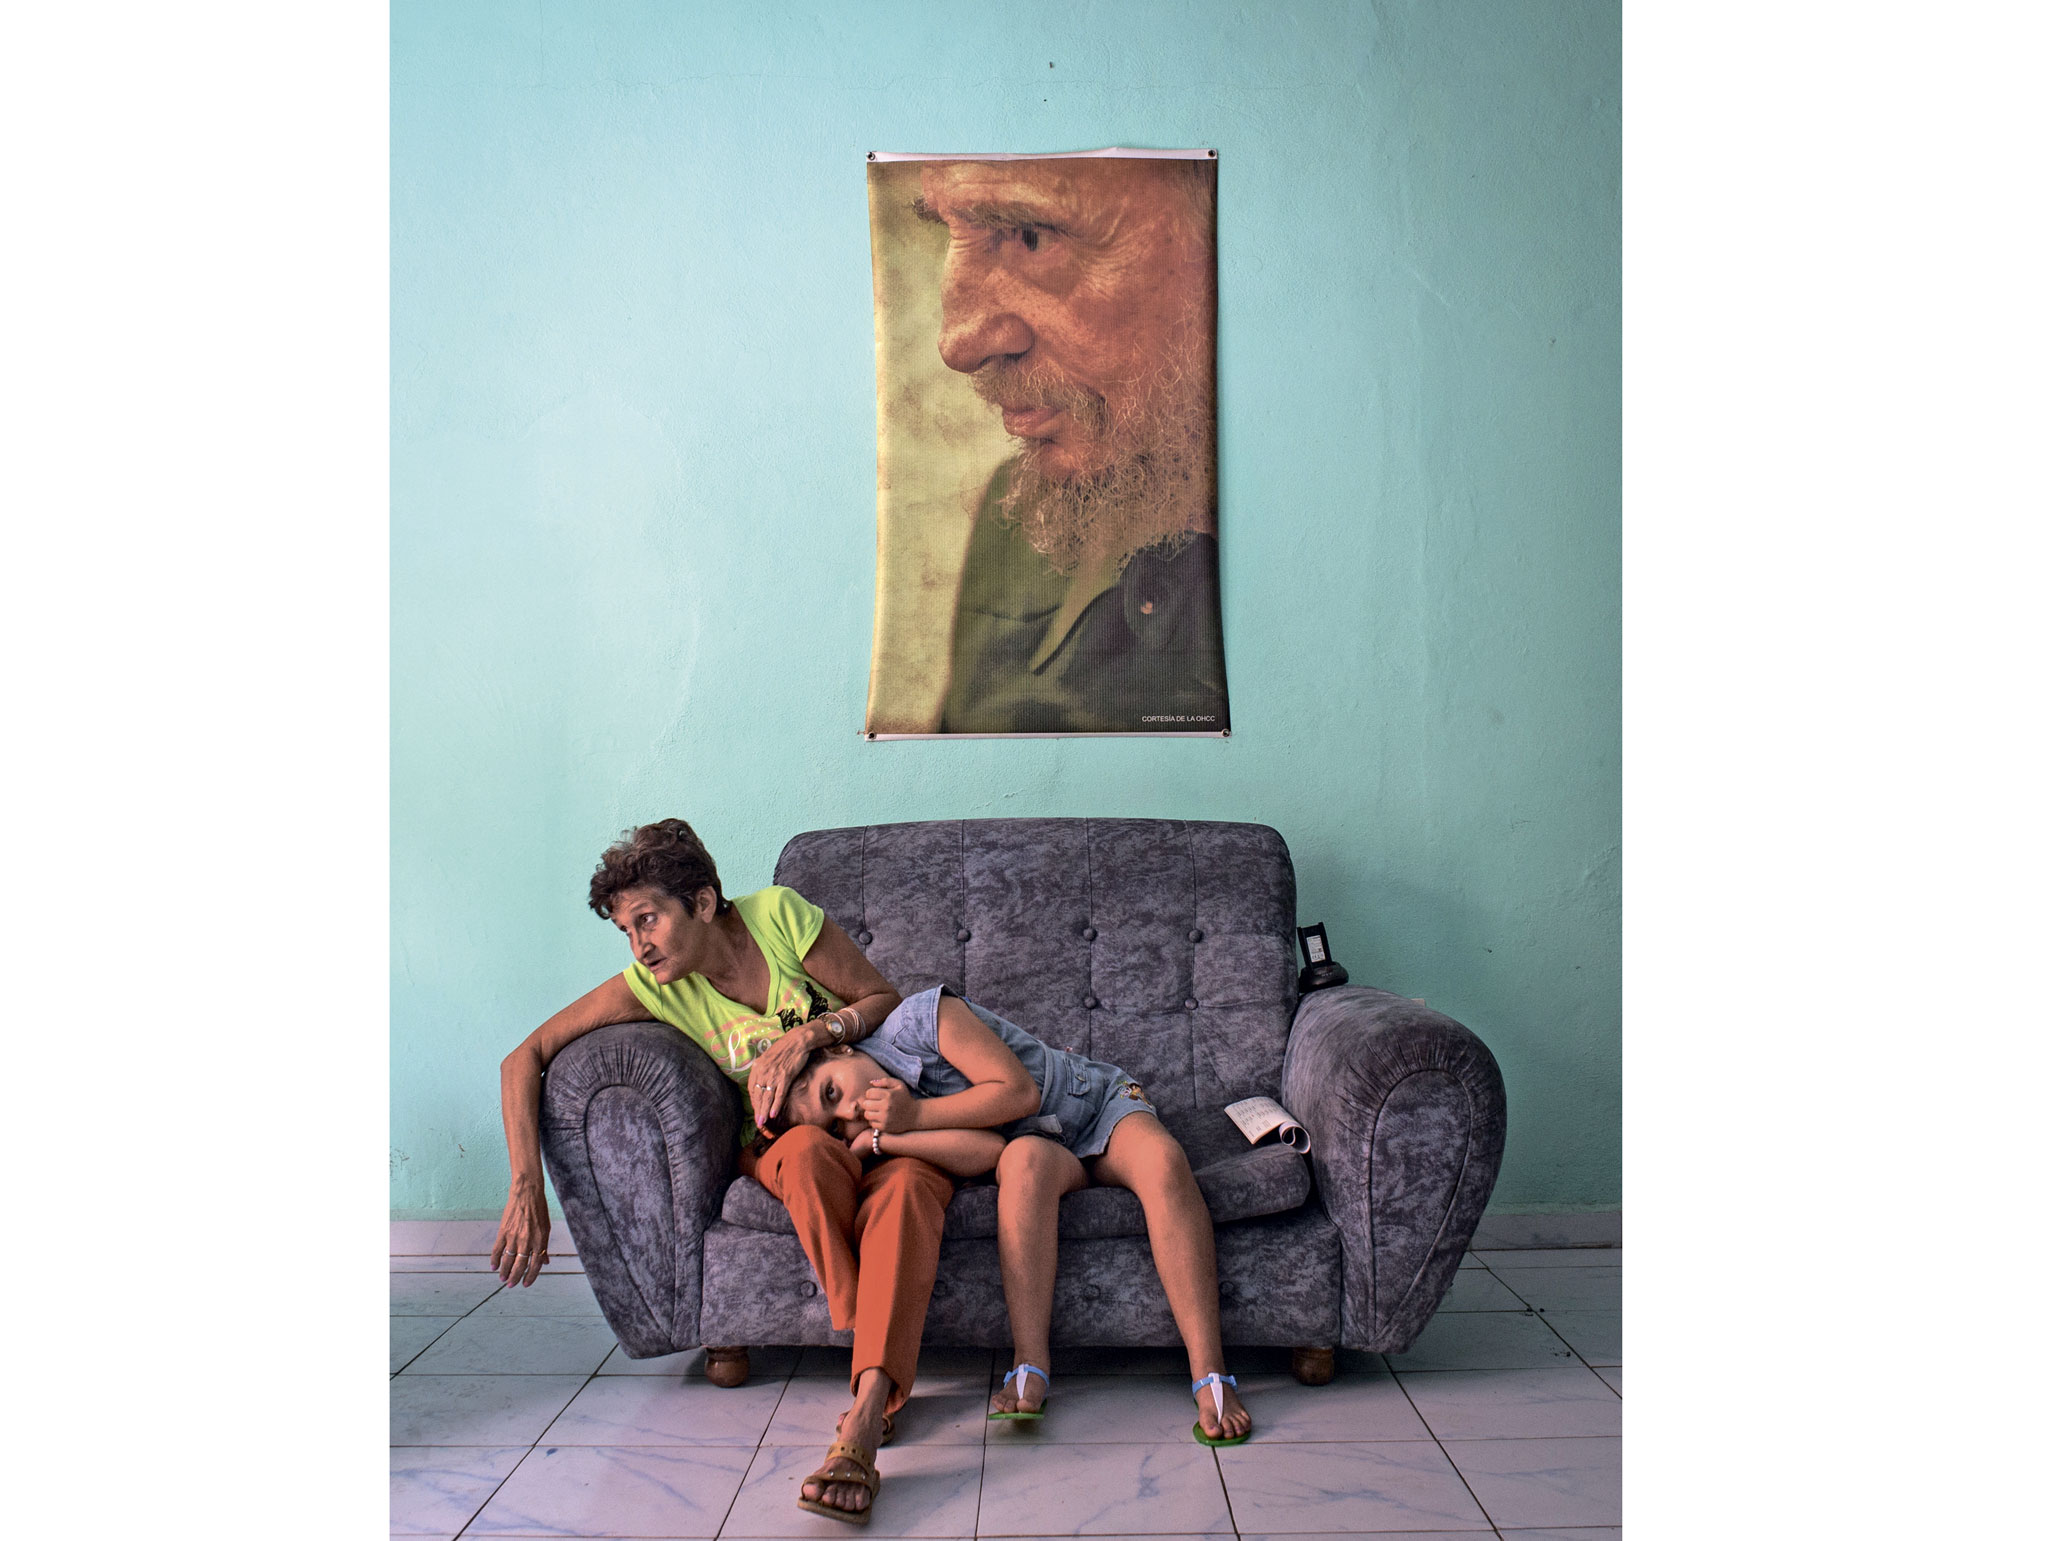 «Верность» — снимок, отмеченный наградой World Press Photo 2017 в номинации «Лица». В названии снимка обыгран смысл имени Фидель (от латинского Fidelis — верный)